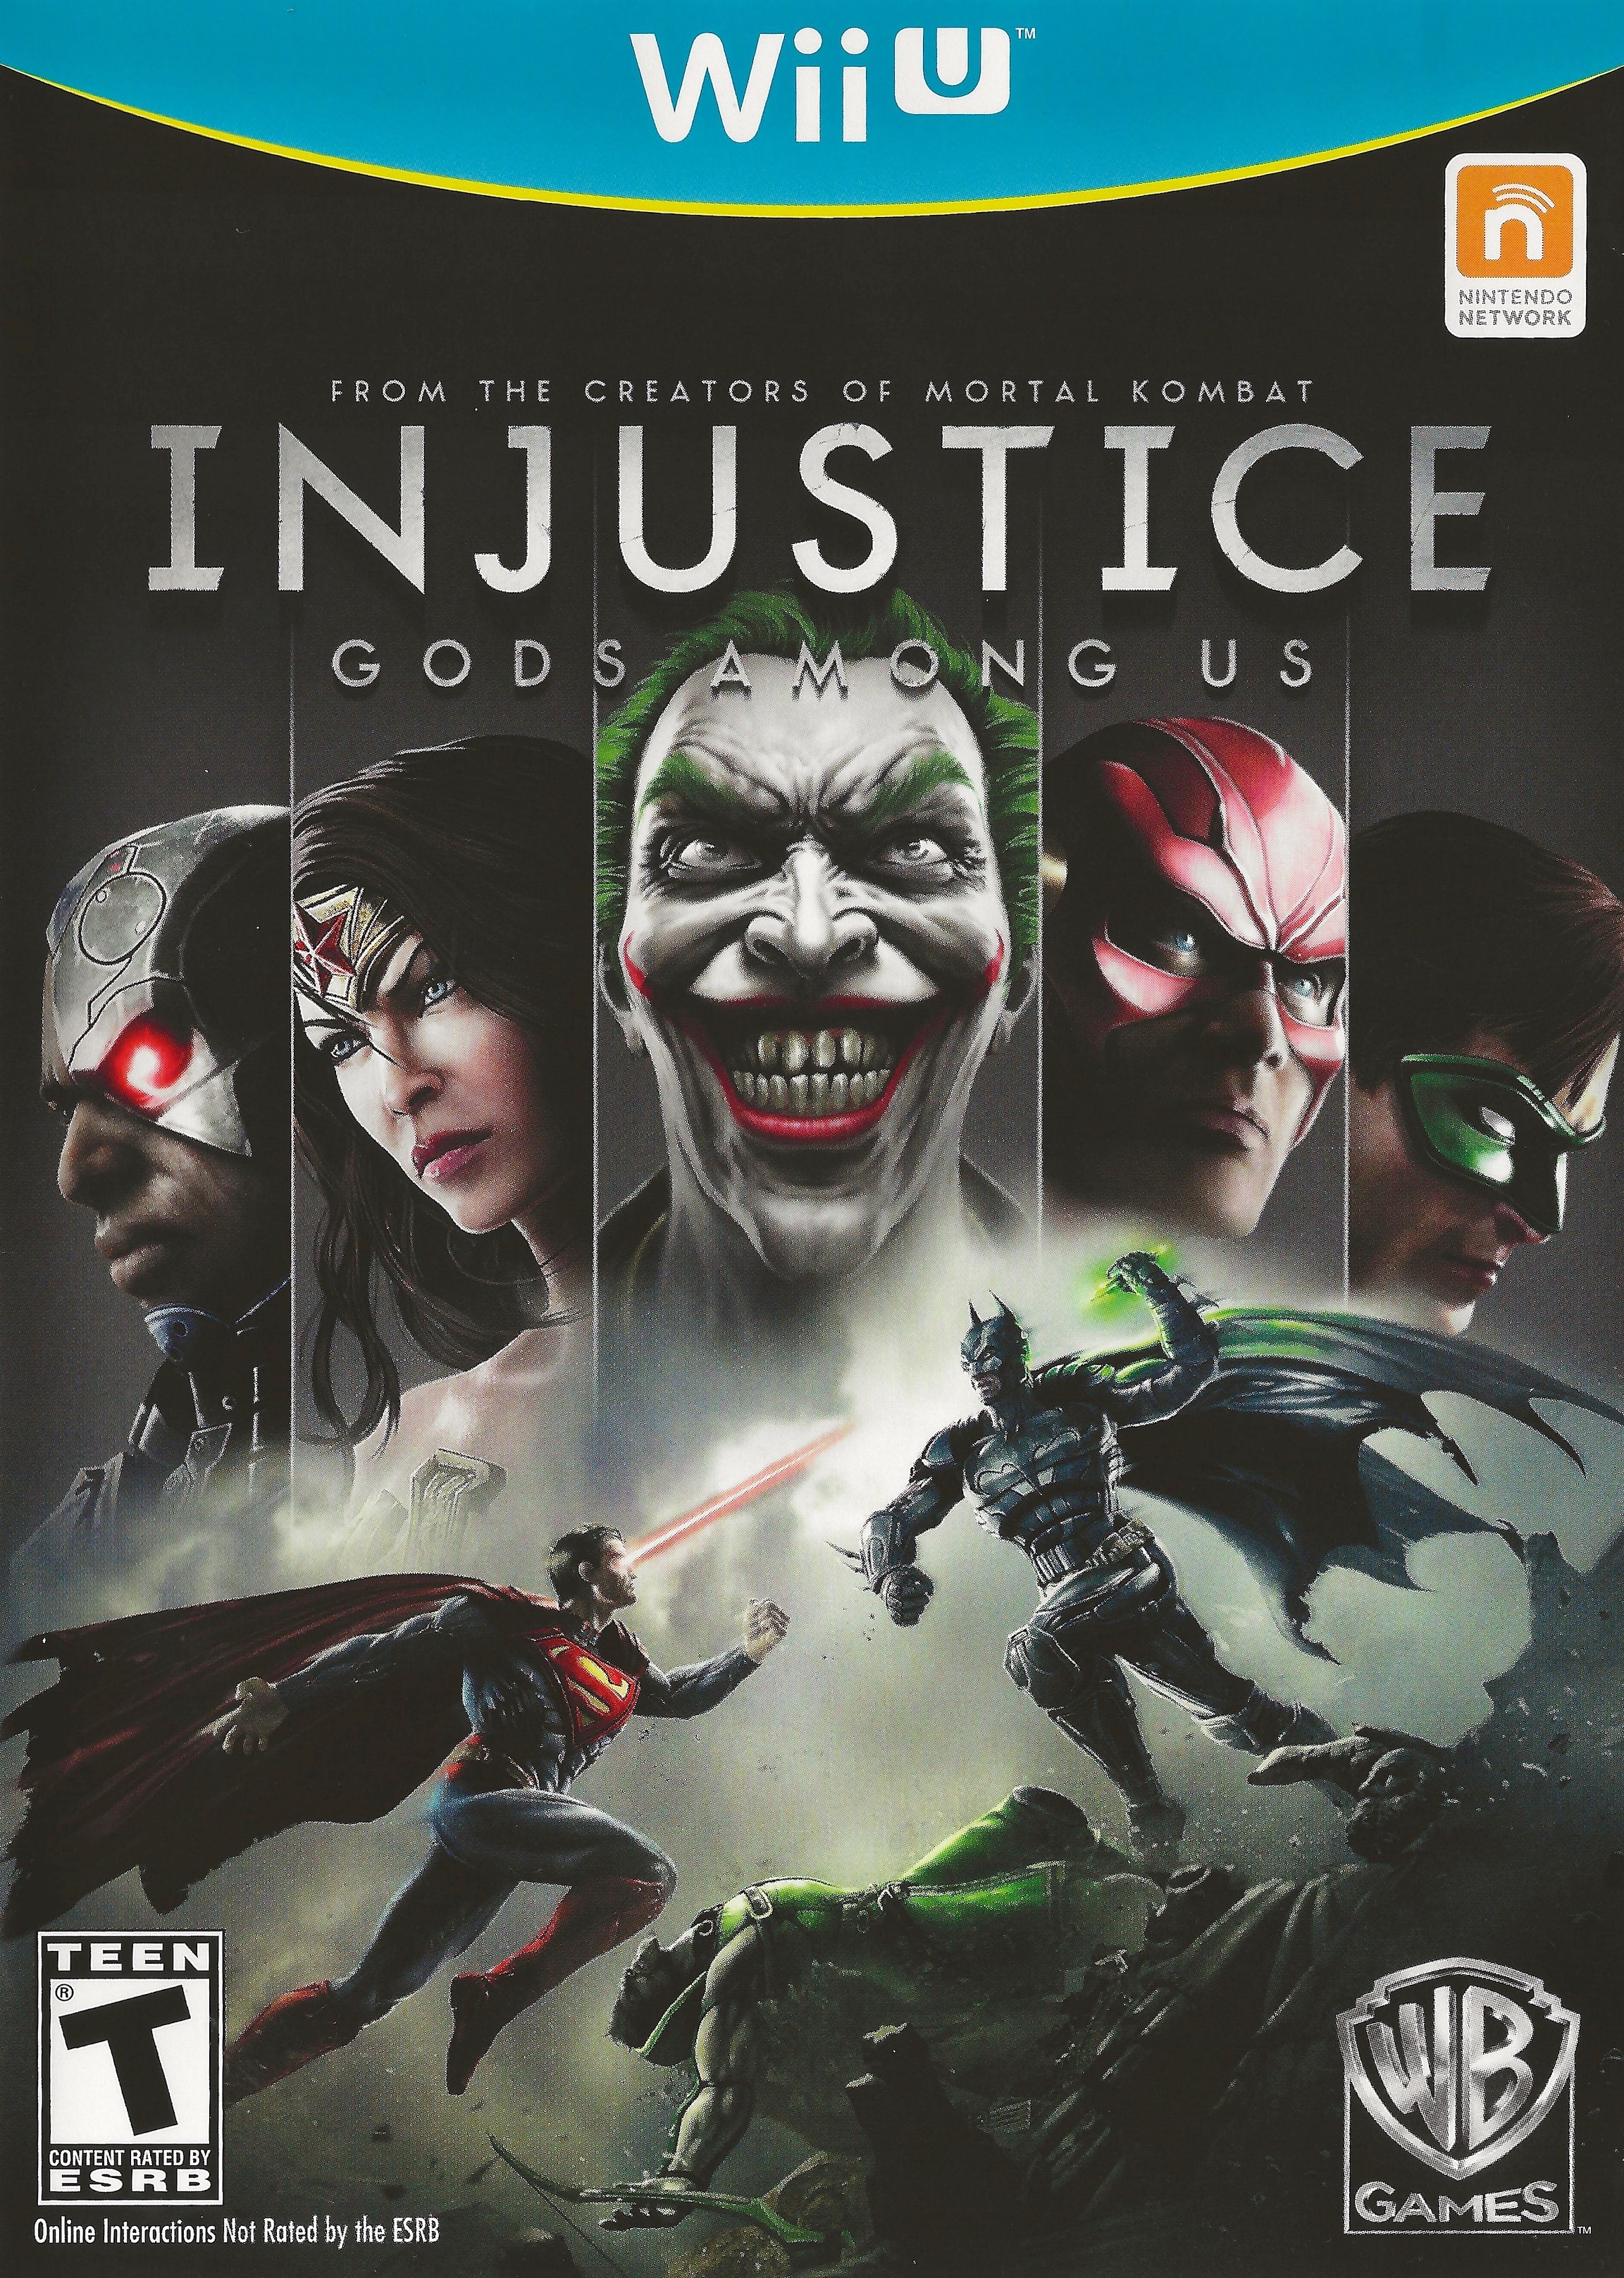 'Injustice: Gods Among Us'